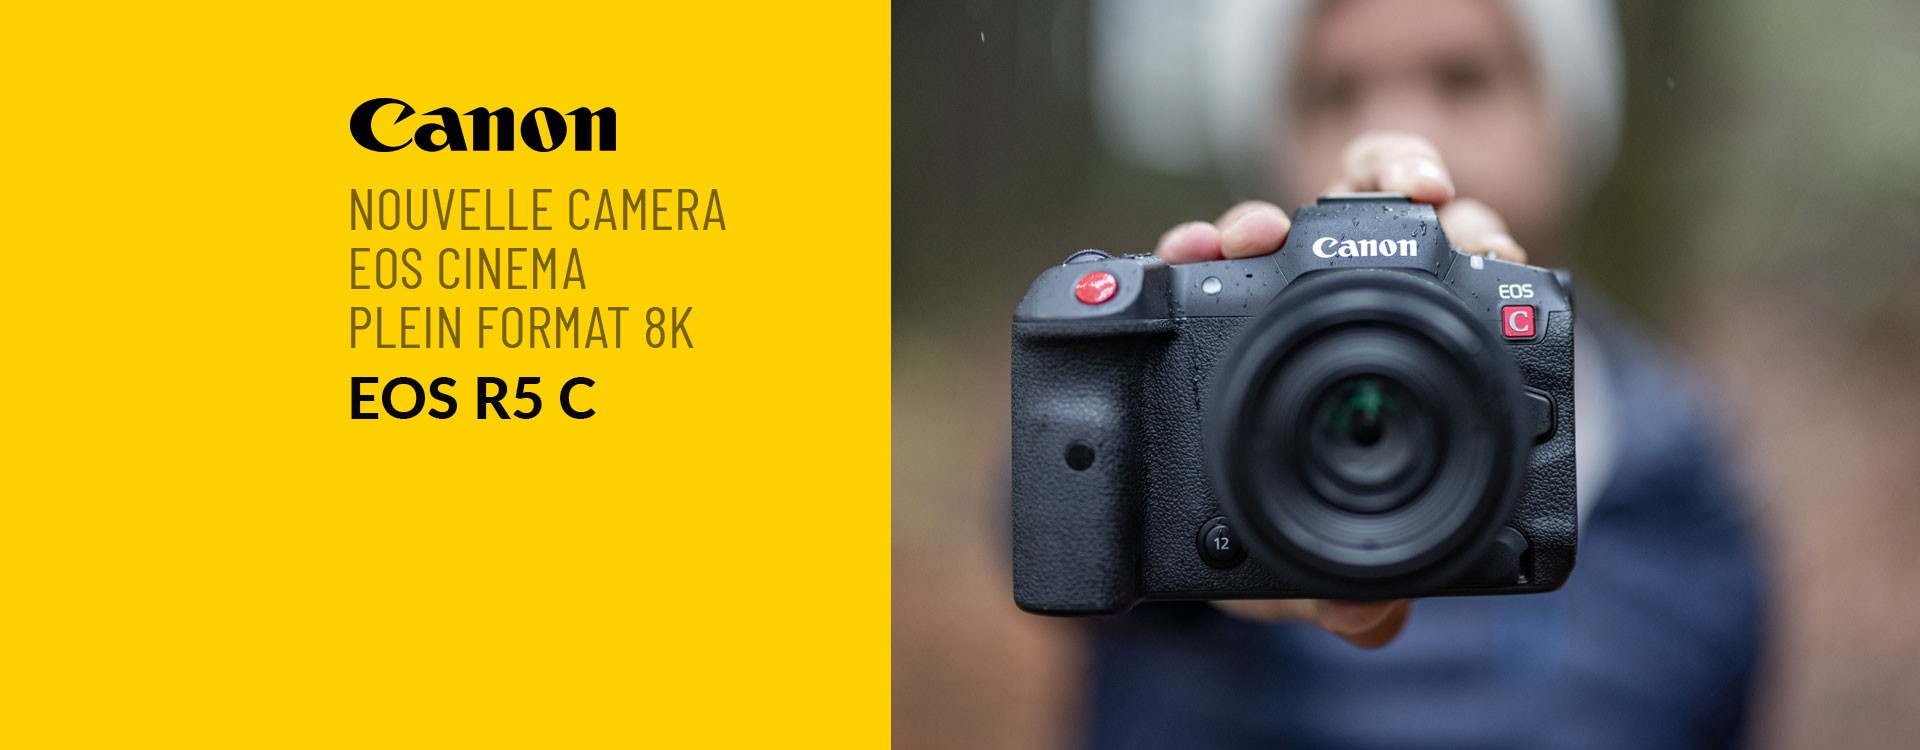 Nouvelle camera EOS R5 C de chez Canon